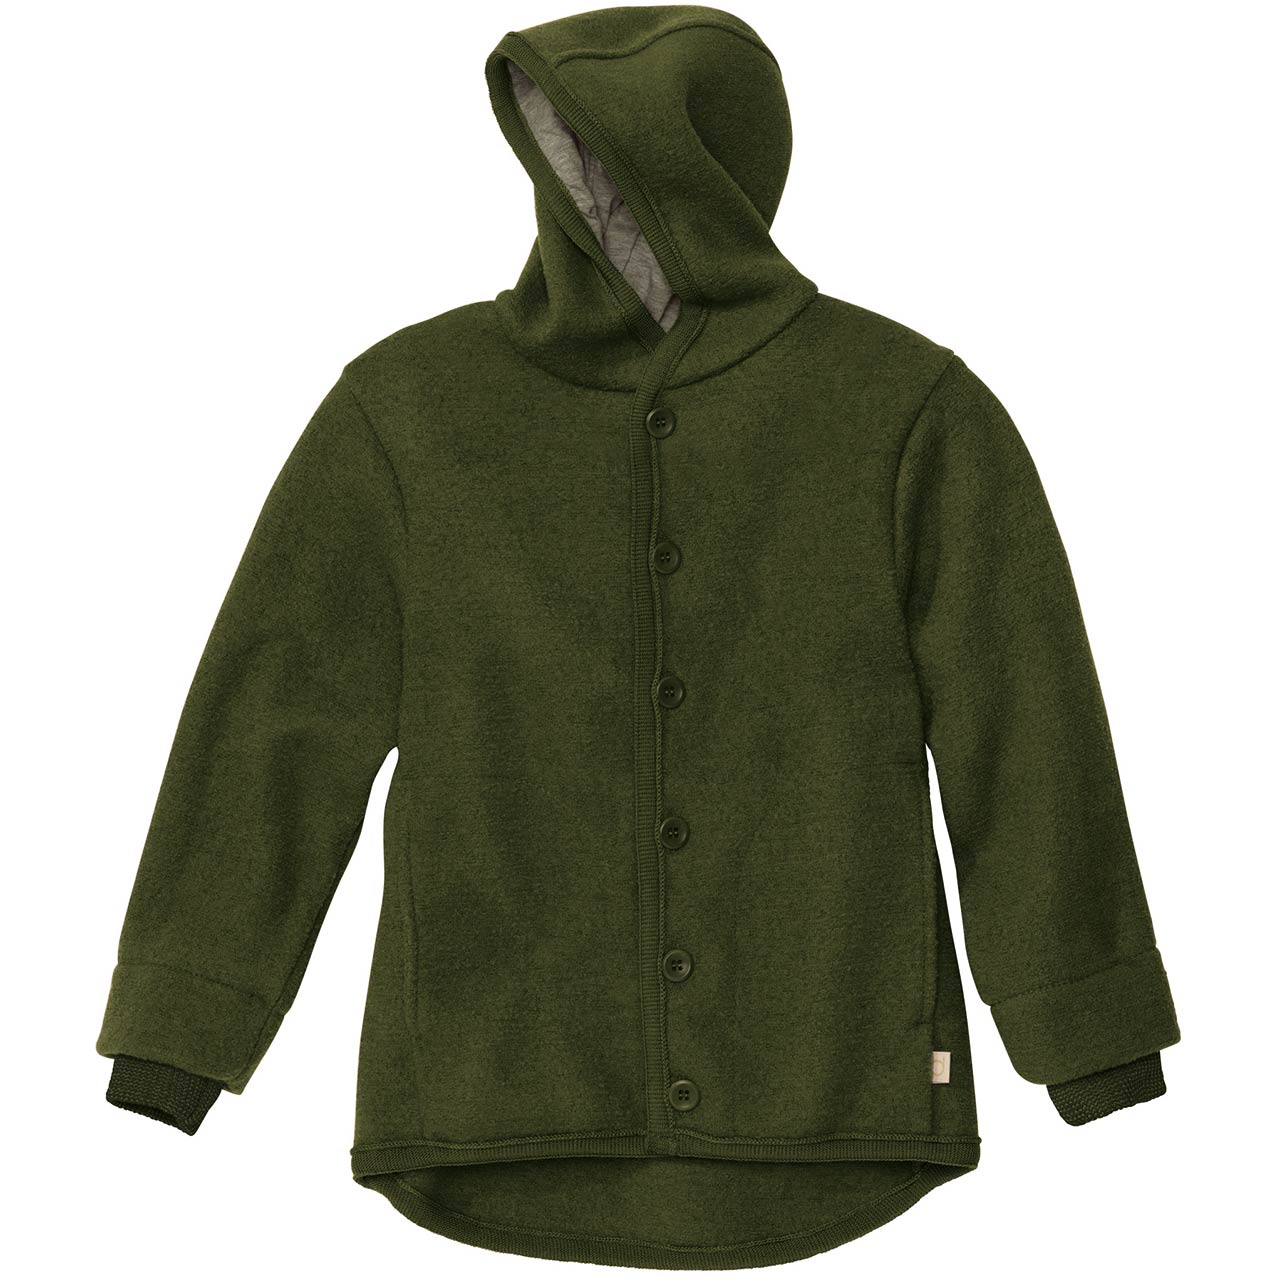 Walk-Jacke mit Knopfleiste in oliv-grün